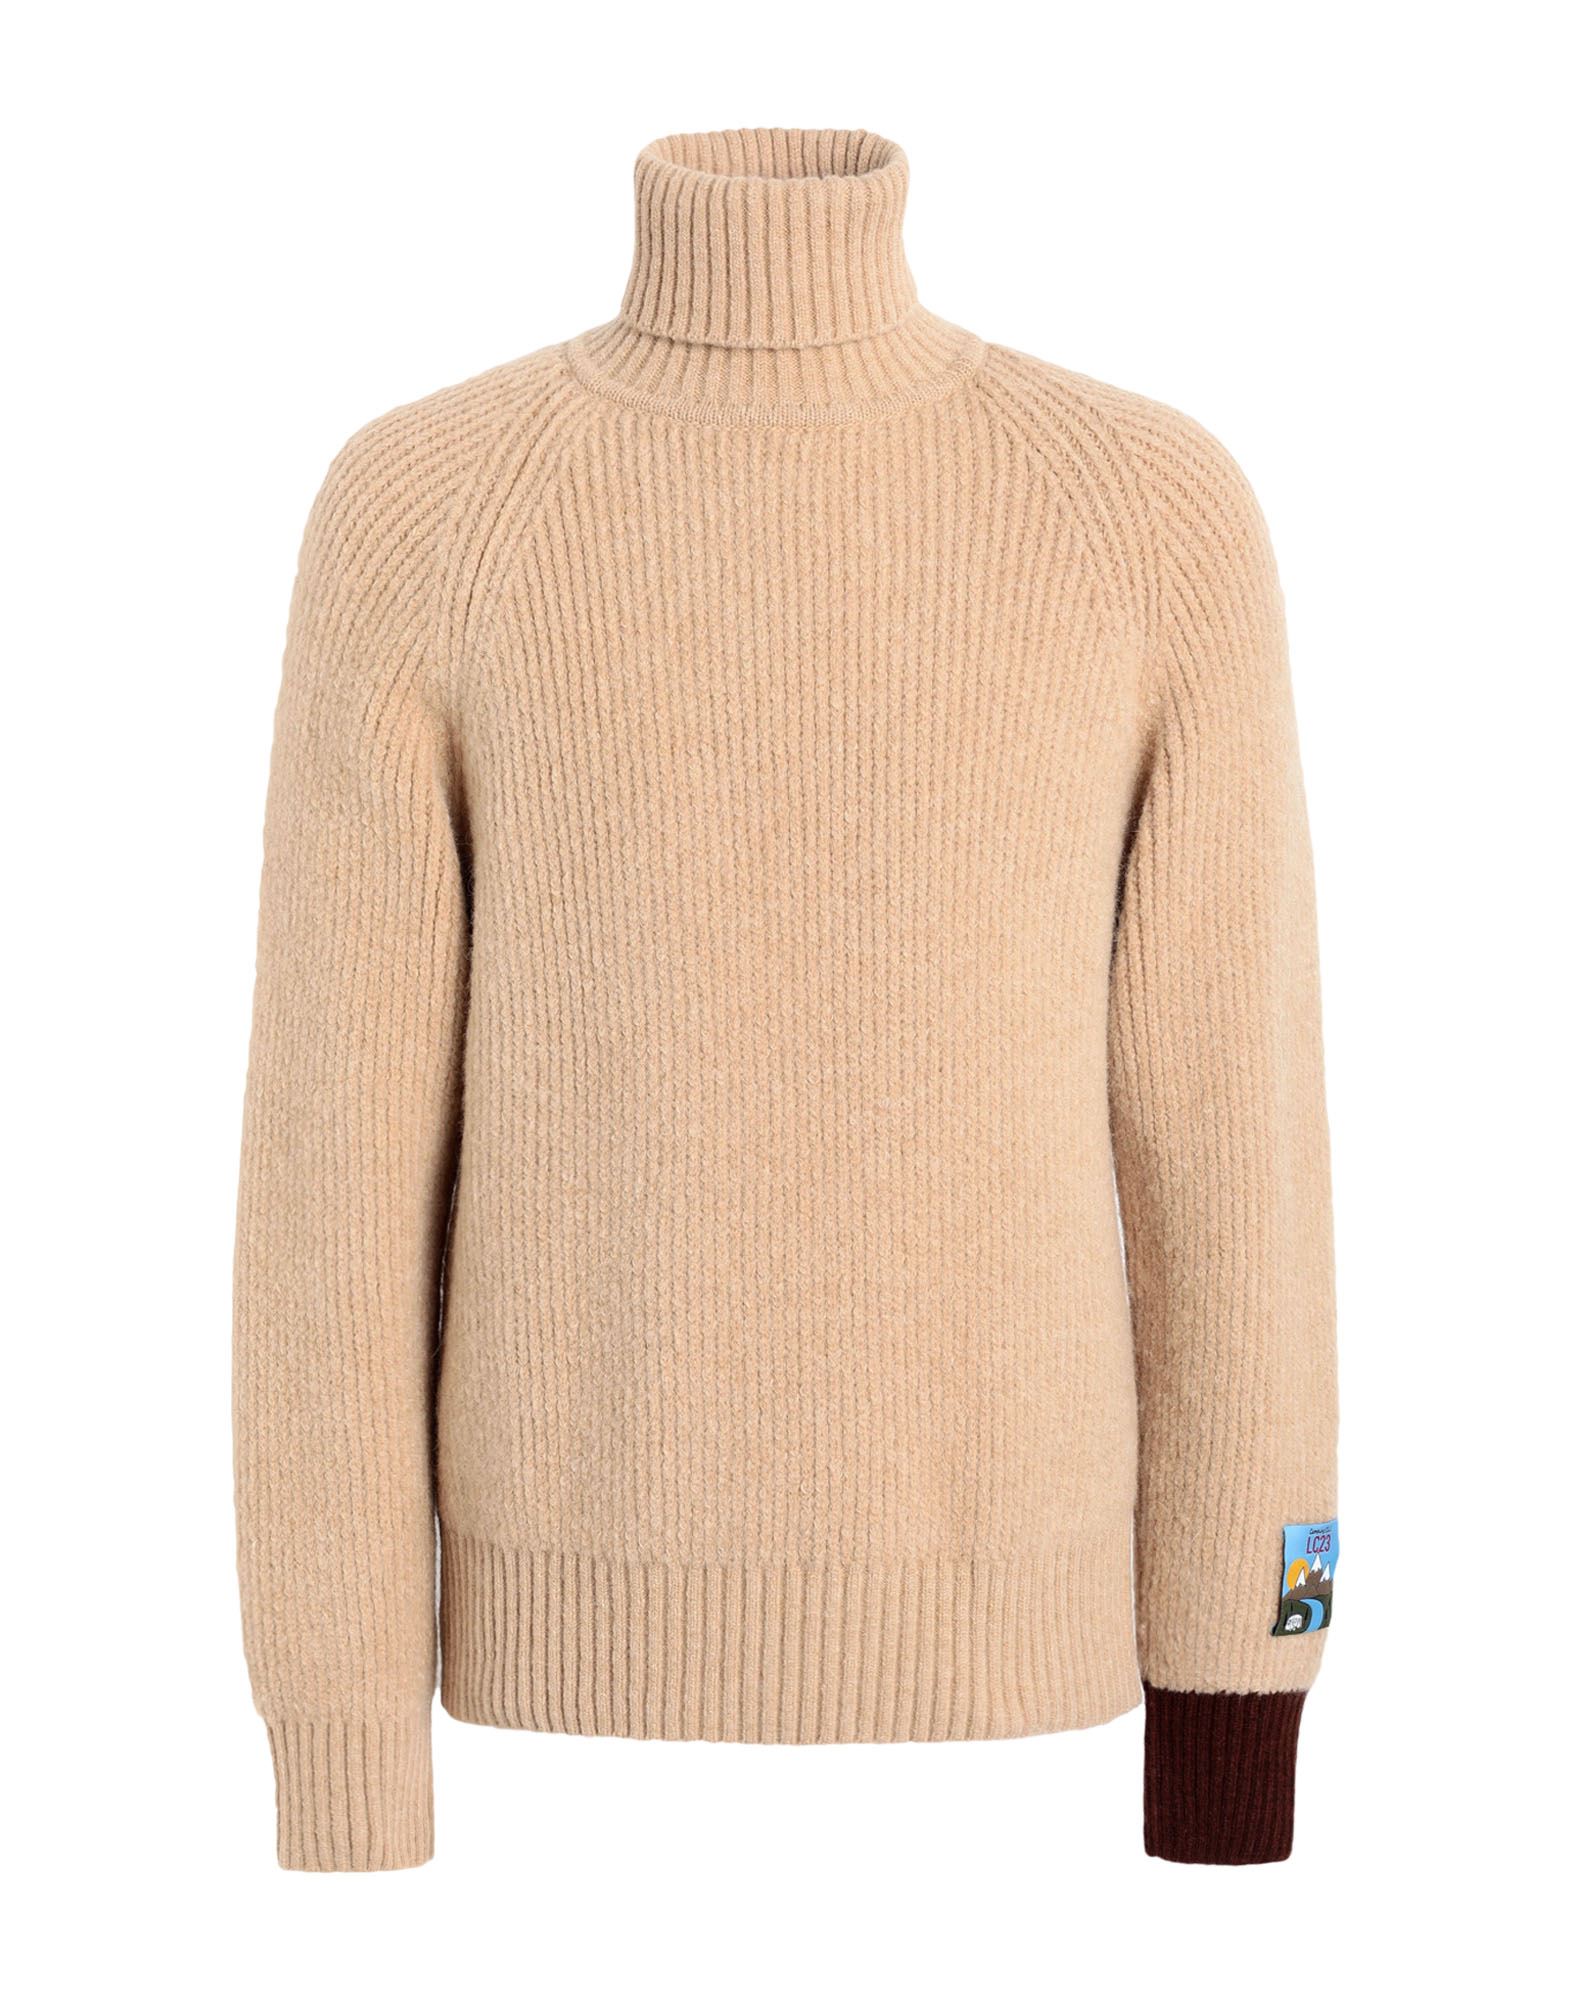 Shop Lc23 Turtleneck Sweater Man Turtleneck Beige Size M Acrylic, Polyamide, Synthetic Fibers, Wool, Moha